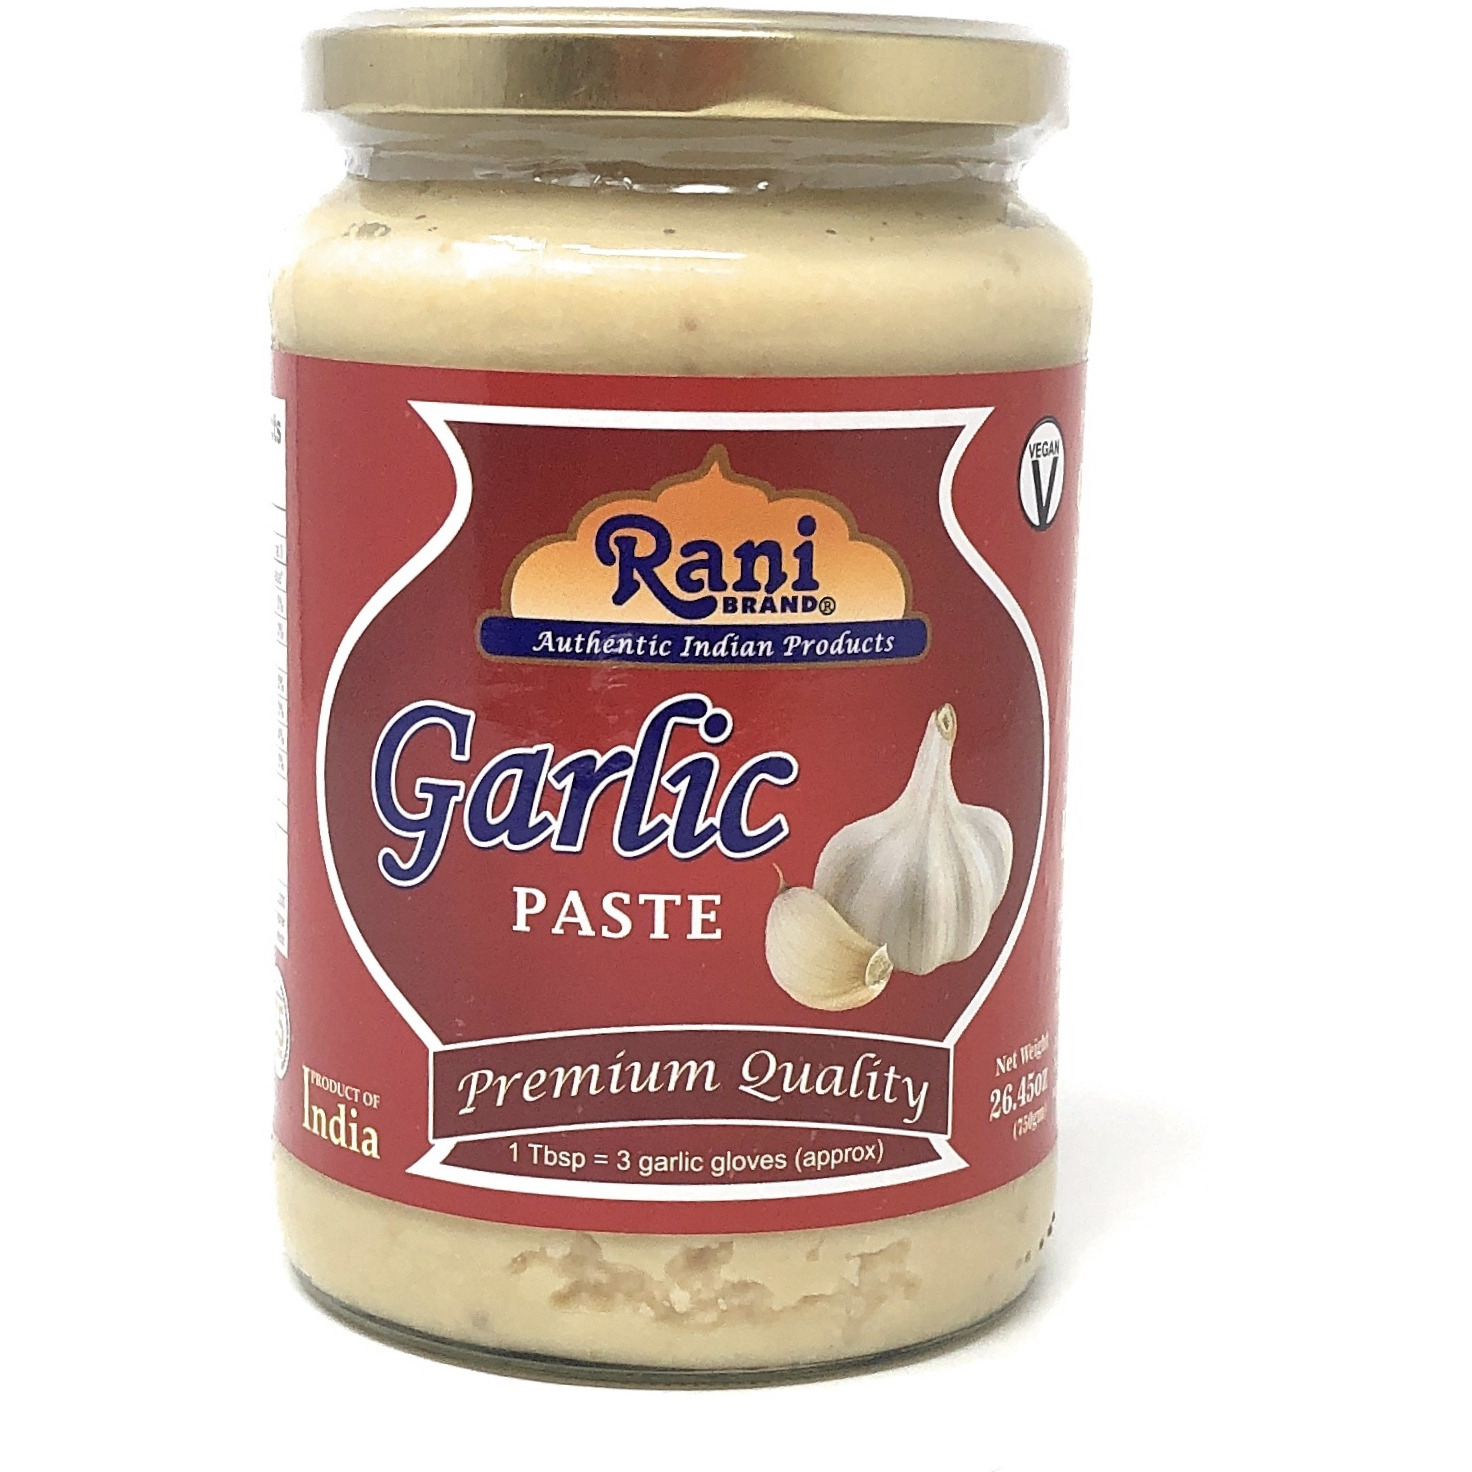 Rani Garlic Cooking Paste 26.5oz (750g) ~ Vegan | Gluten Free Ingredients | NON-GMO | No Colors | Indian Origin